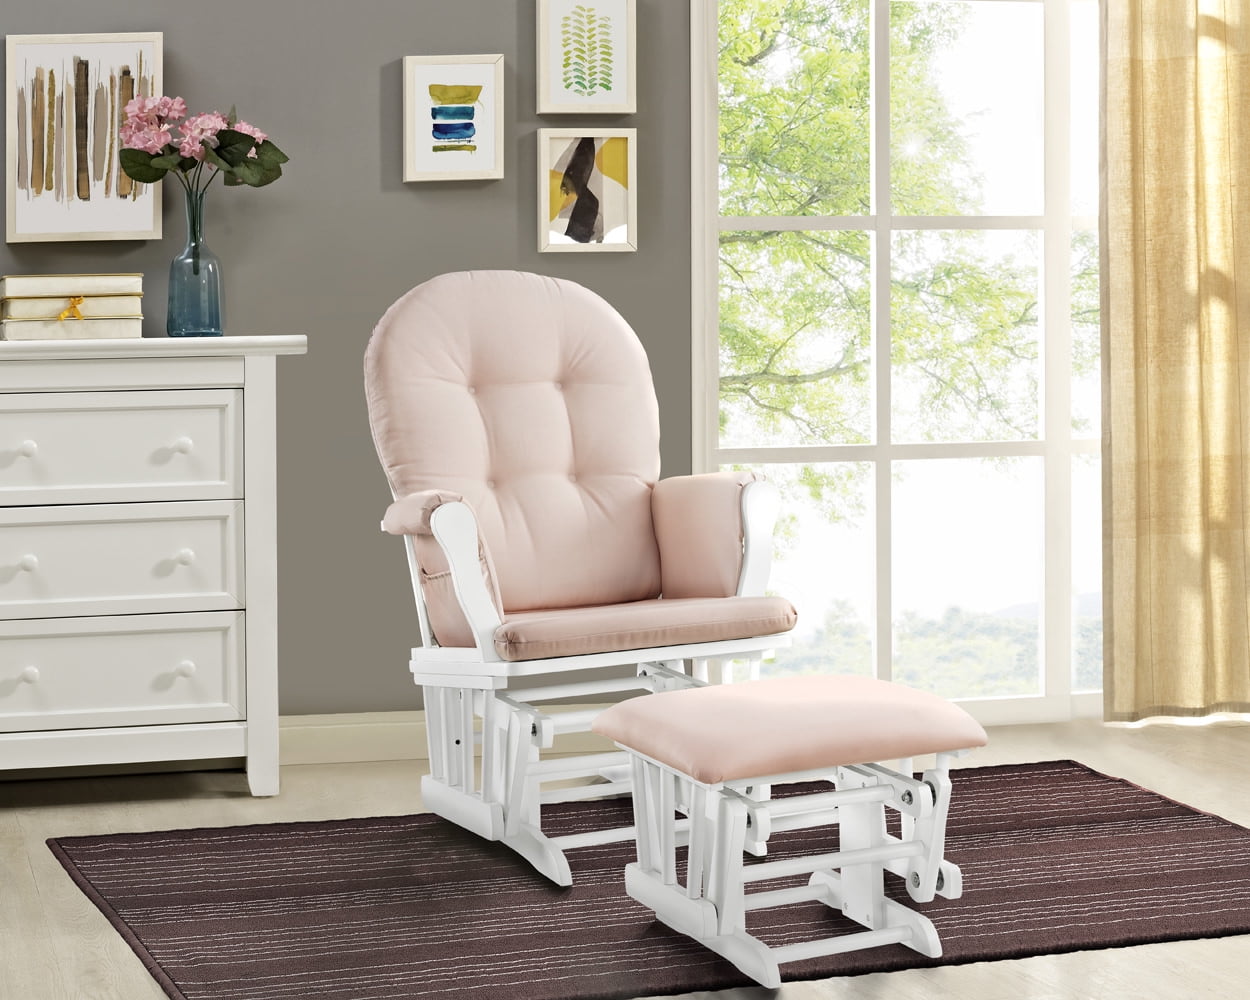 Nursing Chair Glider Rocker Ottoman Baby Furniture Rocking Seat